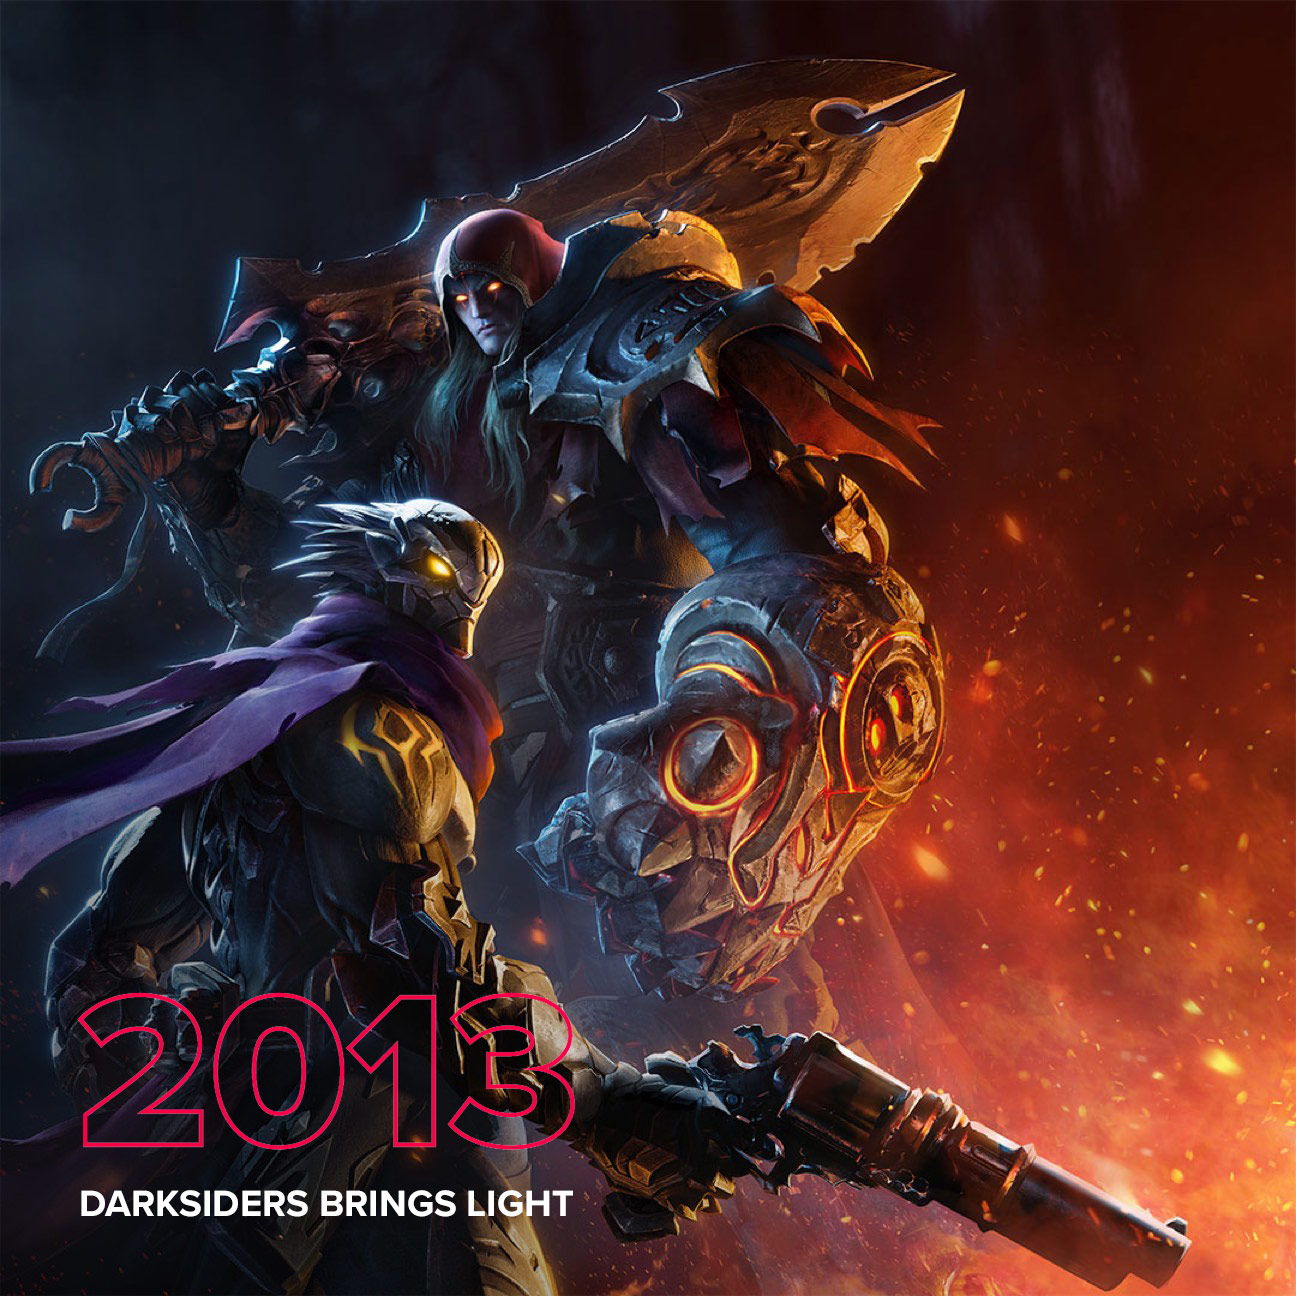 2013 – Darksiders brings light